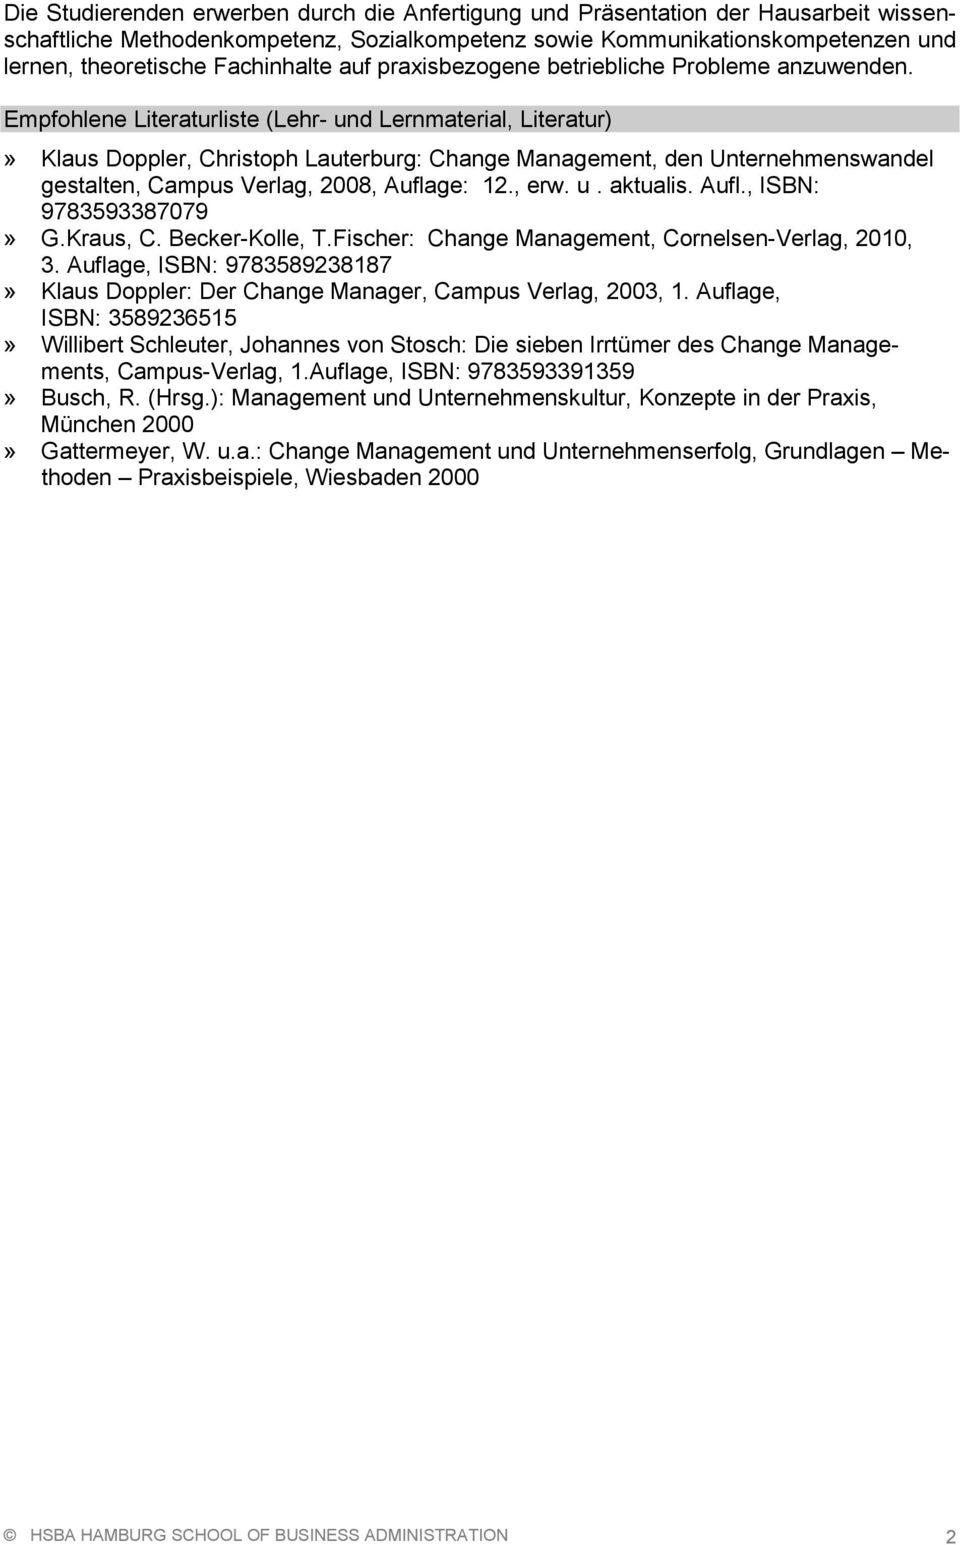 Empfohlene Literaturliste (Lehr- und Lernmaterial, Literatur)» Klaus Doppler, Christoph Lauterburg: Change Management, den Unternehmenswandel gestalten, Campus Verlag, 2008, Auflage: 12., erw. u. aktualis.